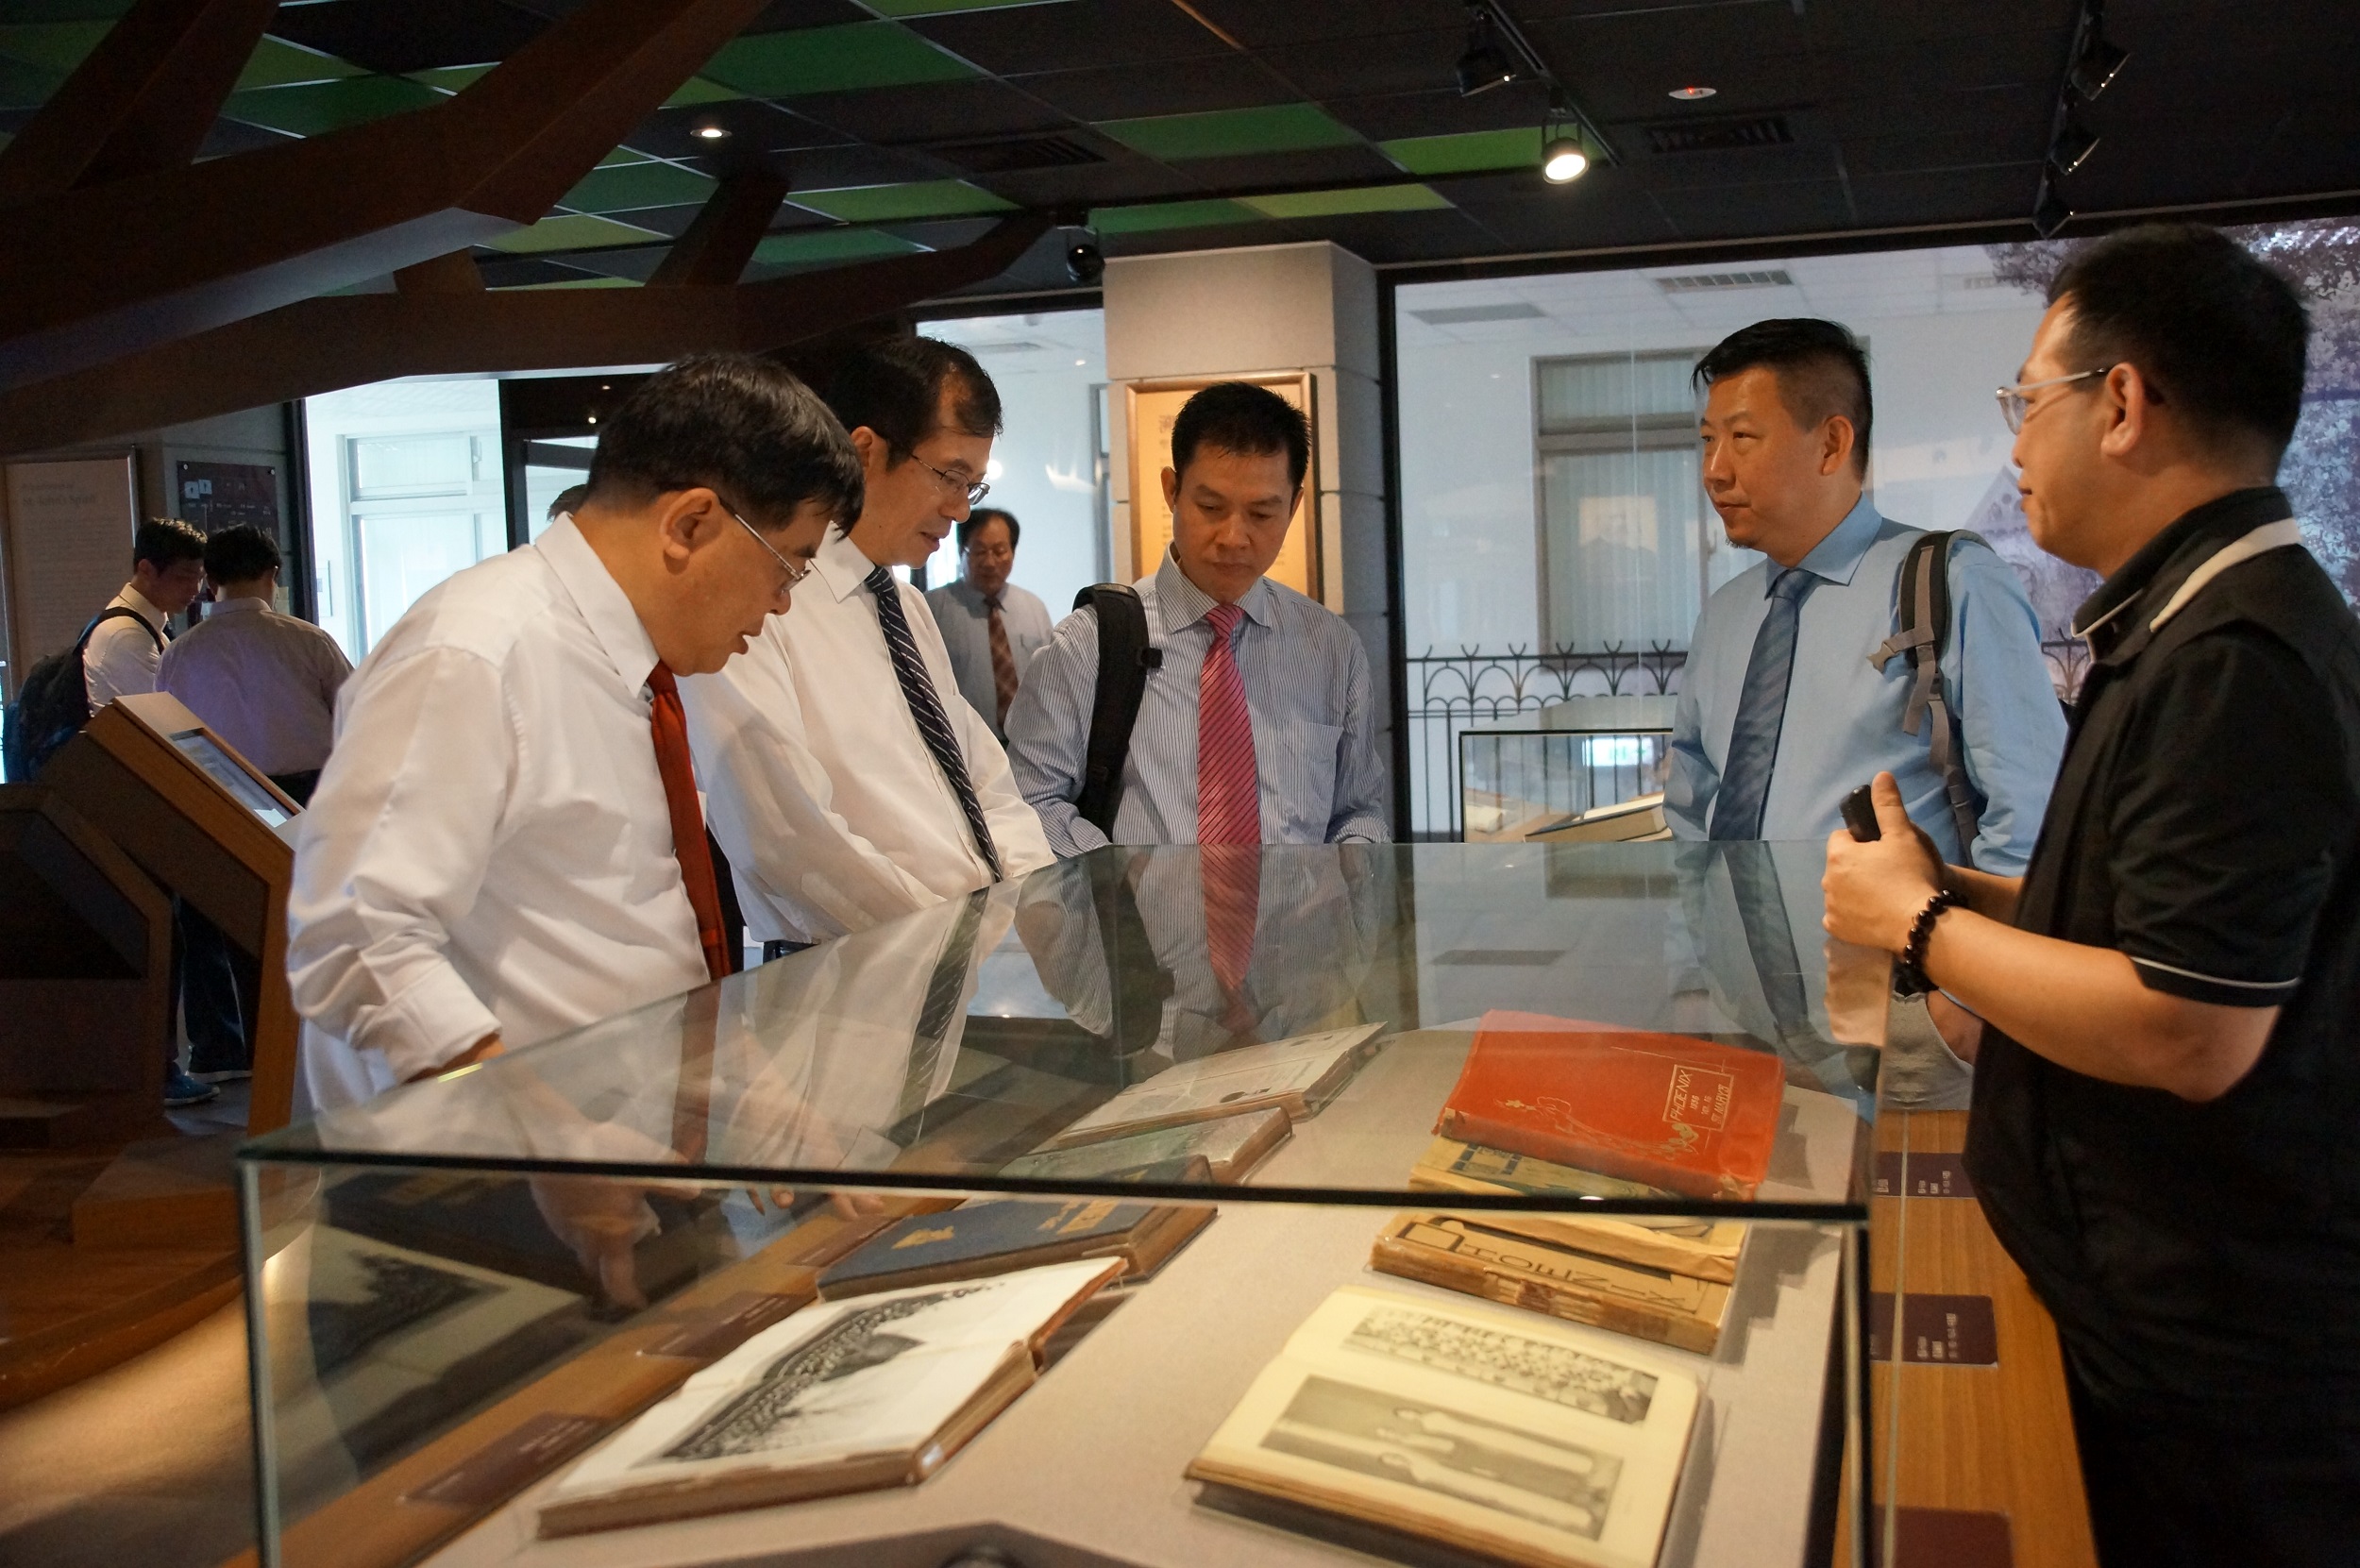 一行人參觀「上海聖約翰大學校史典藏暨研究中心」，由顏旭男資圖長（右一）親自導覽解說